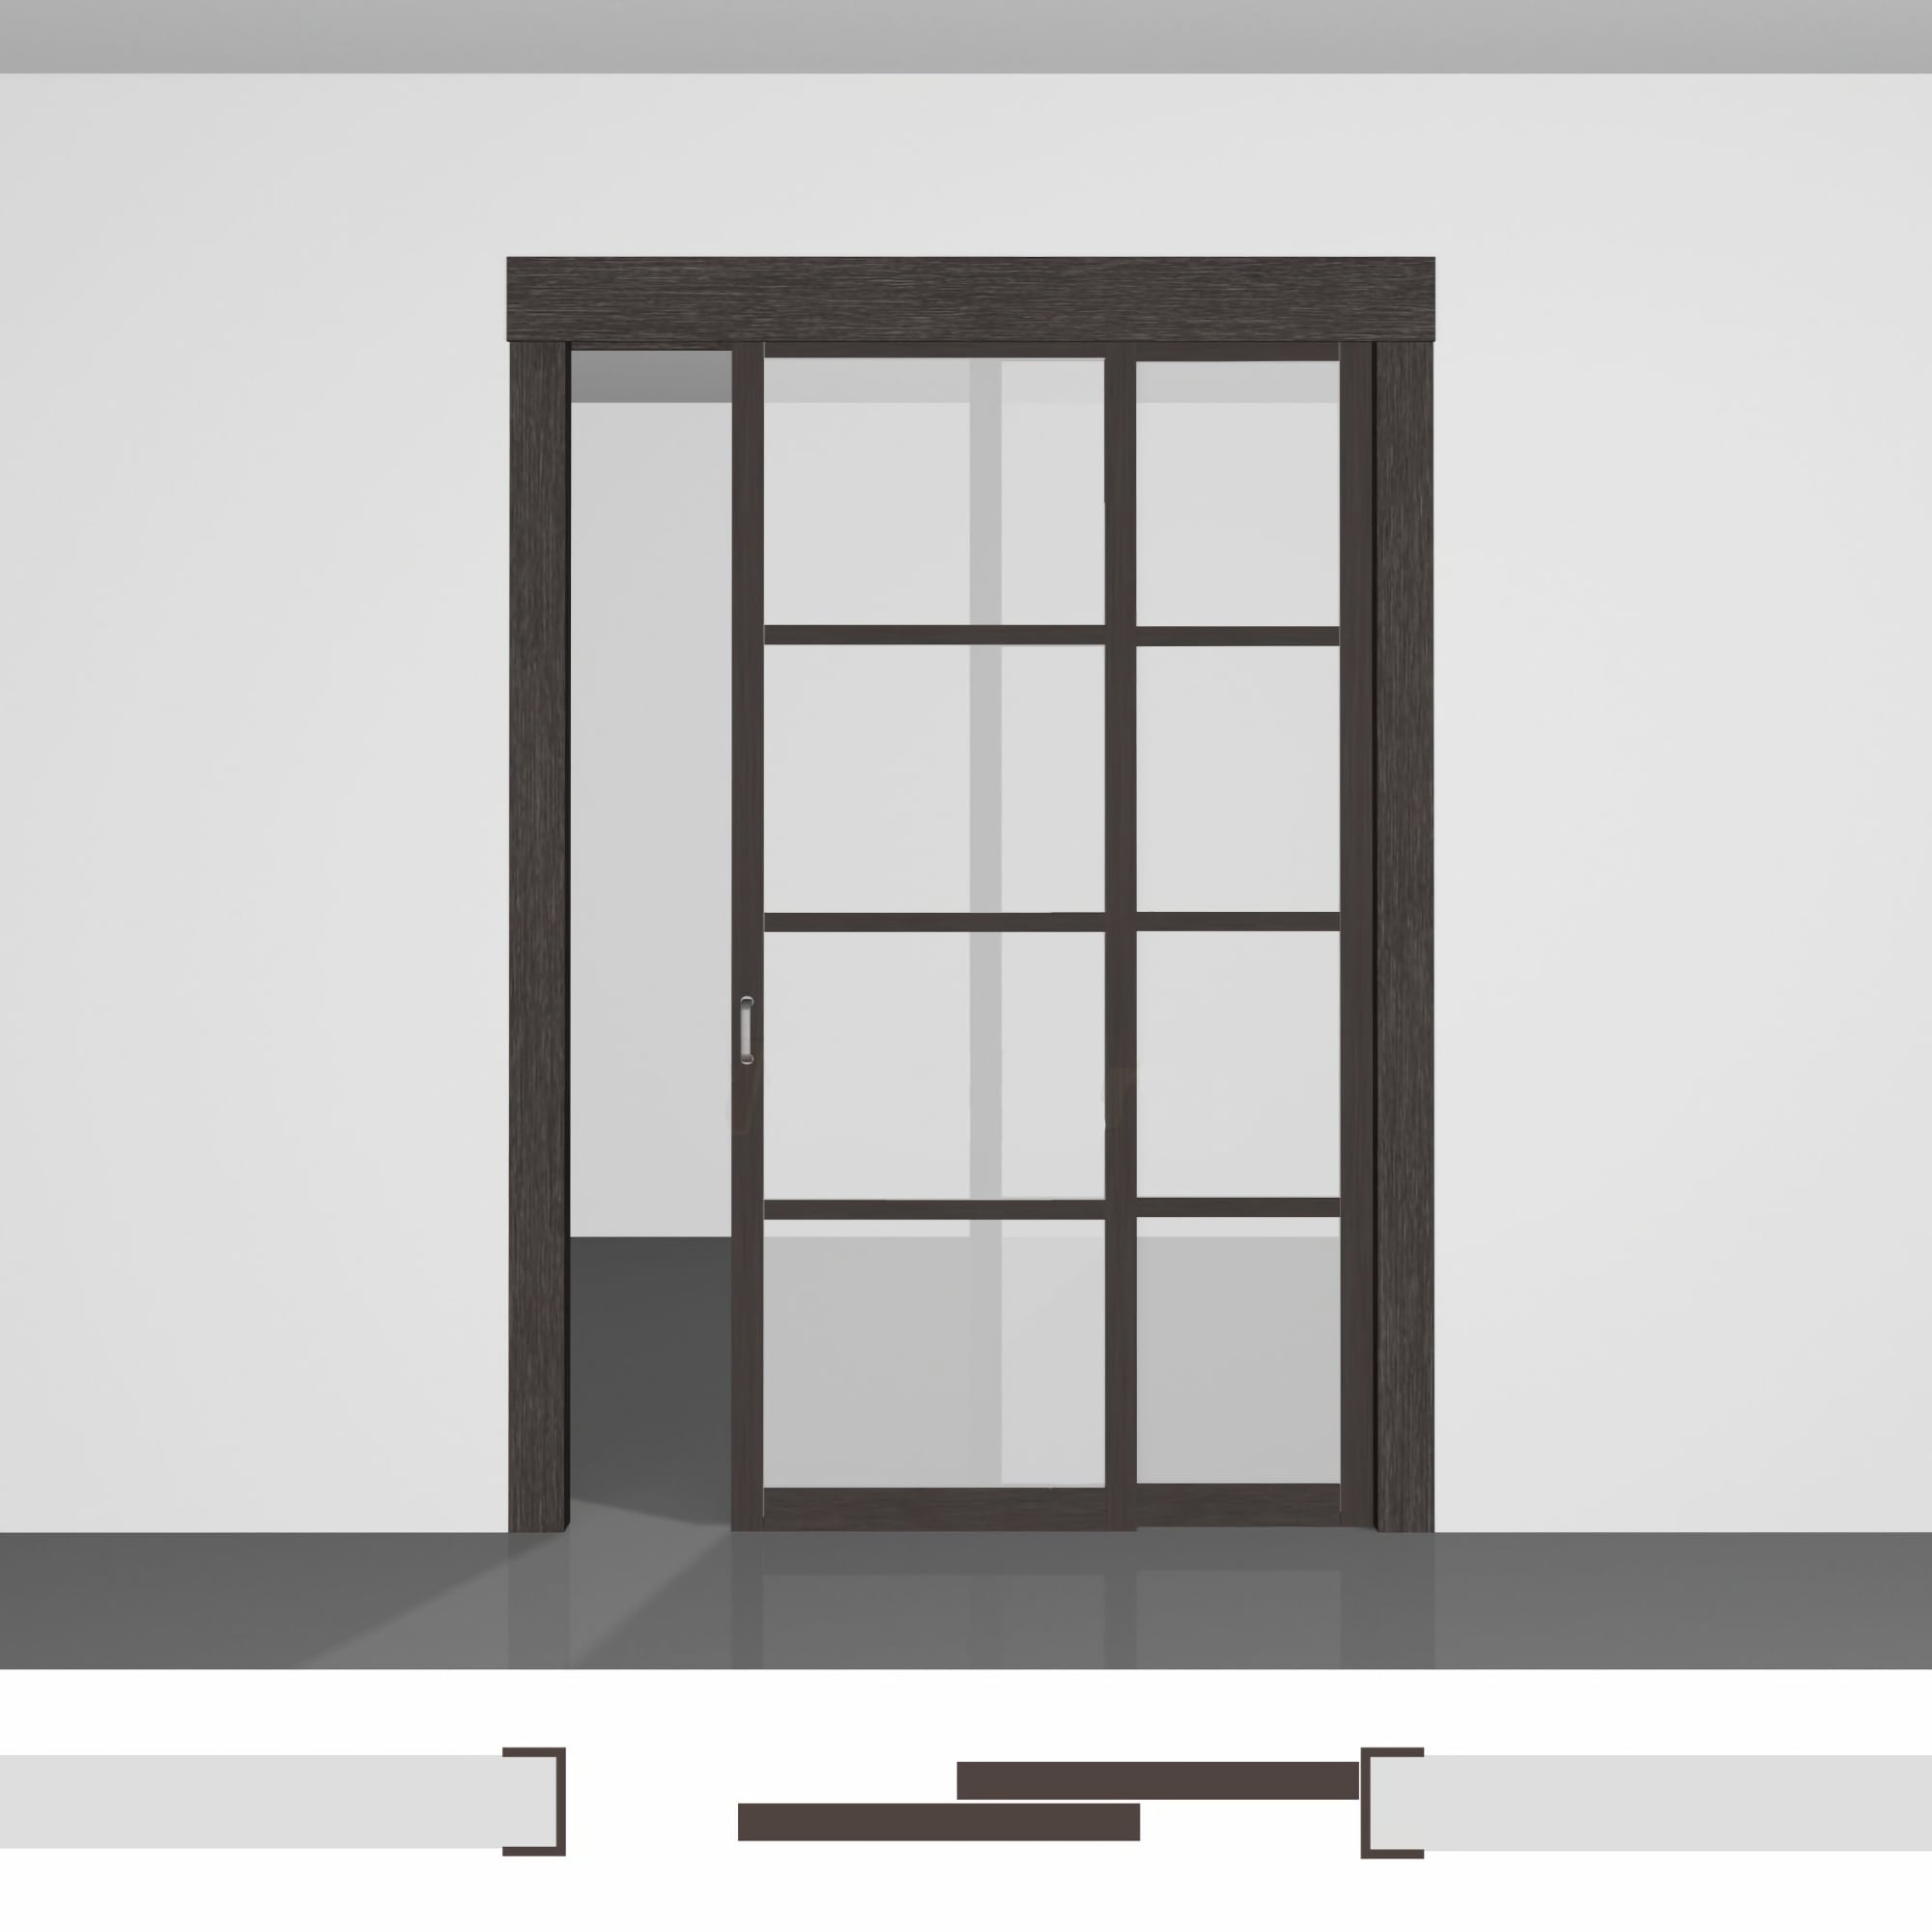 Міжкімнатна перегородка для зонування кімнати, виготовлена з якісних матеріалів, доступна до замовлення - P02.3 • два полотна в отворі • екошпон